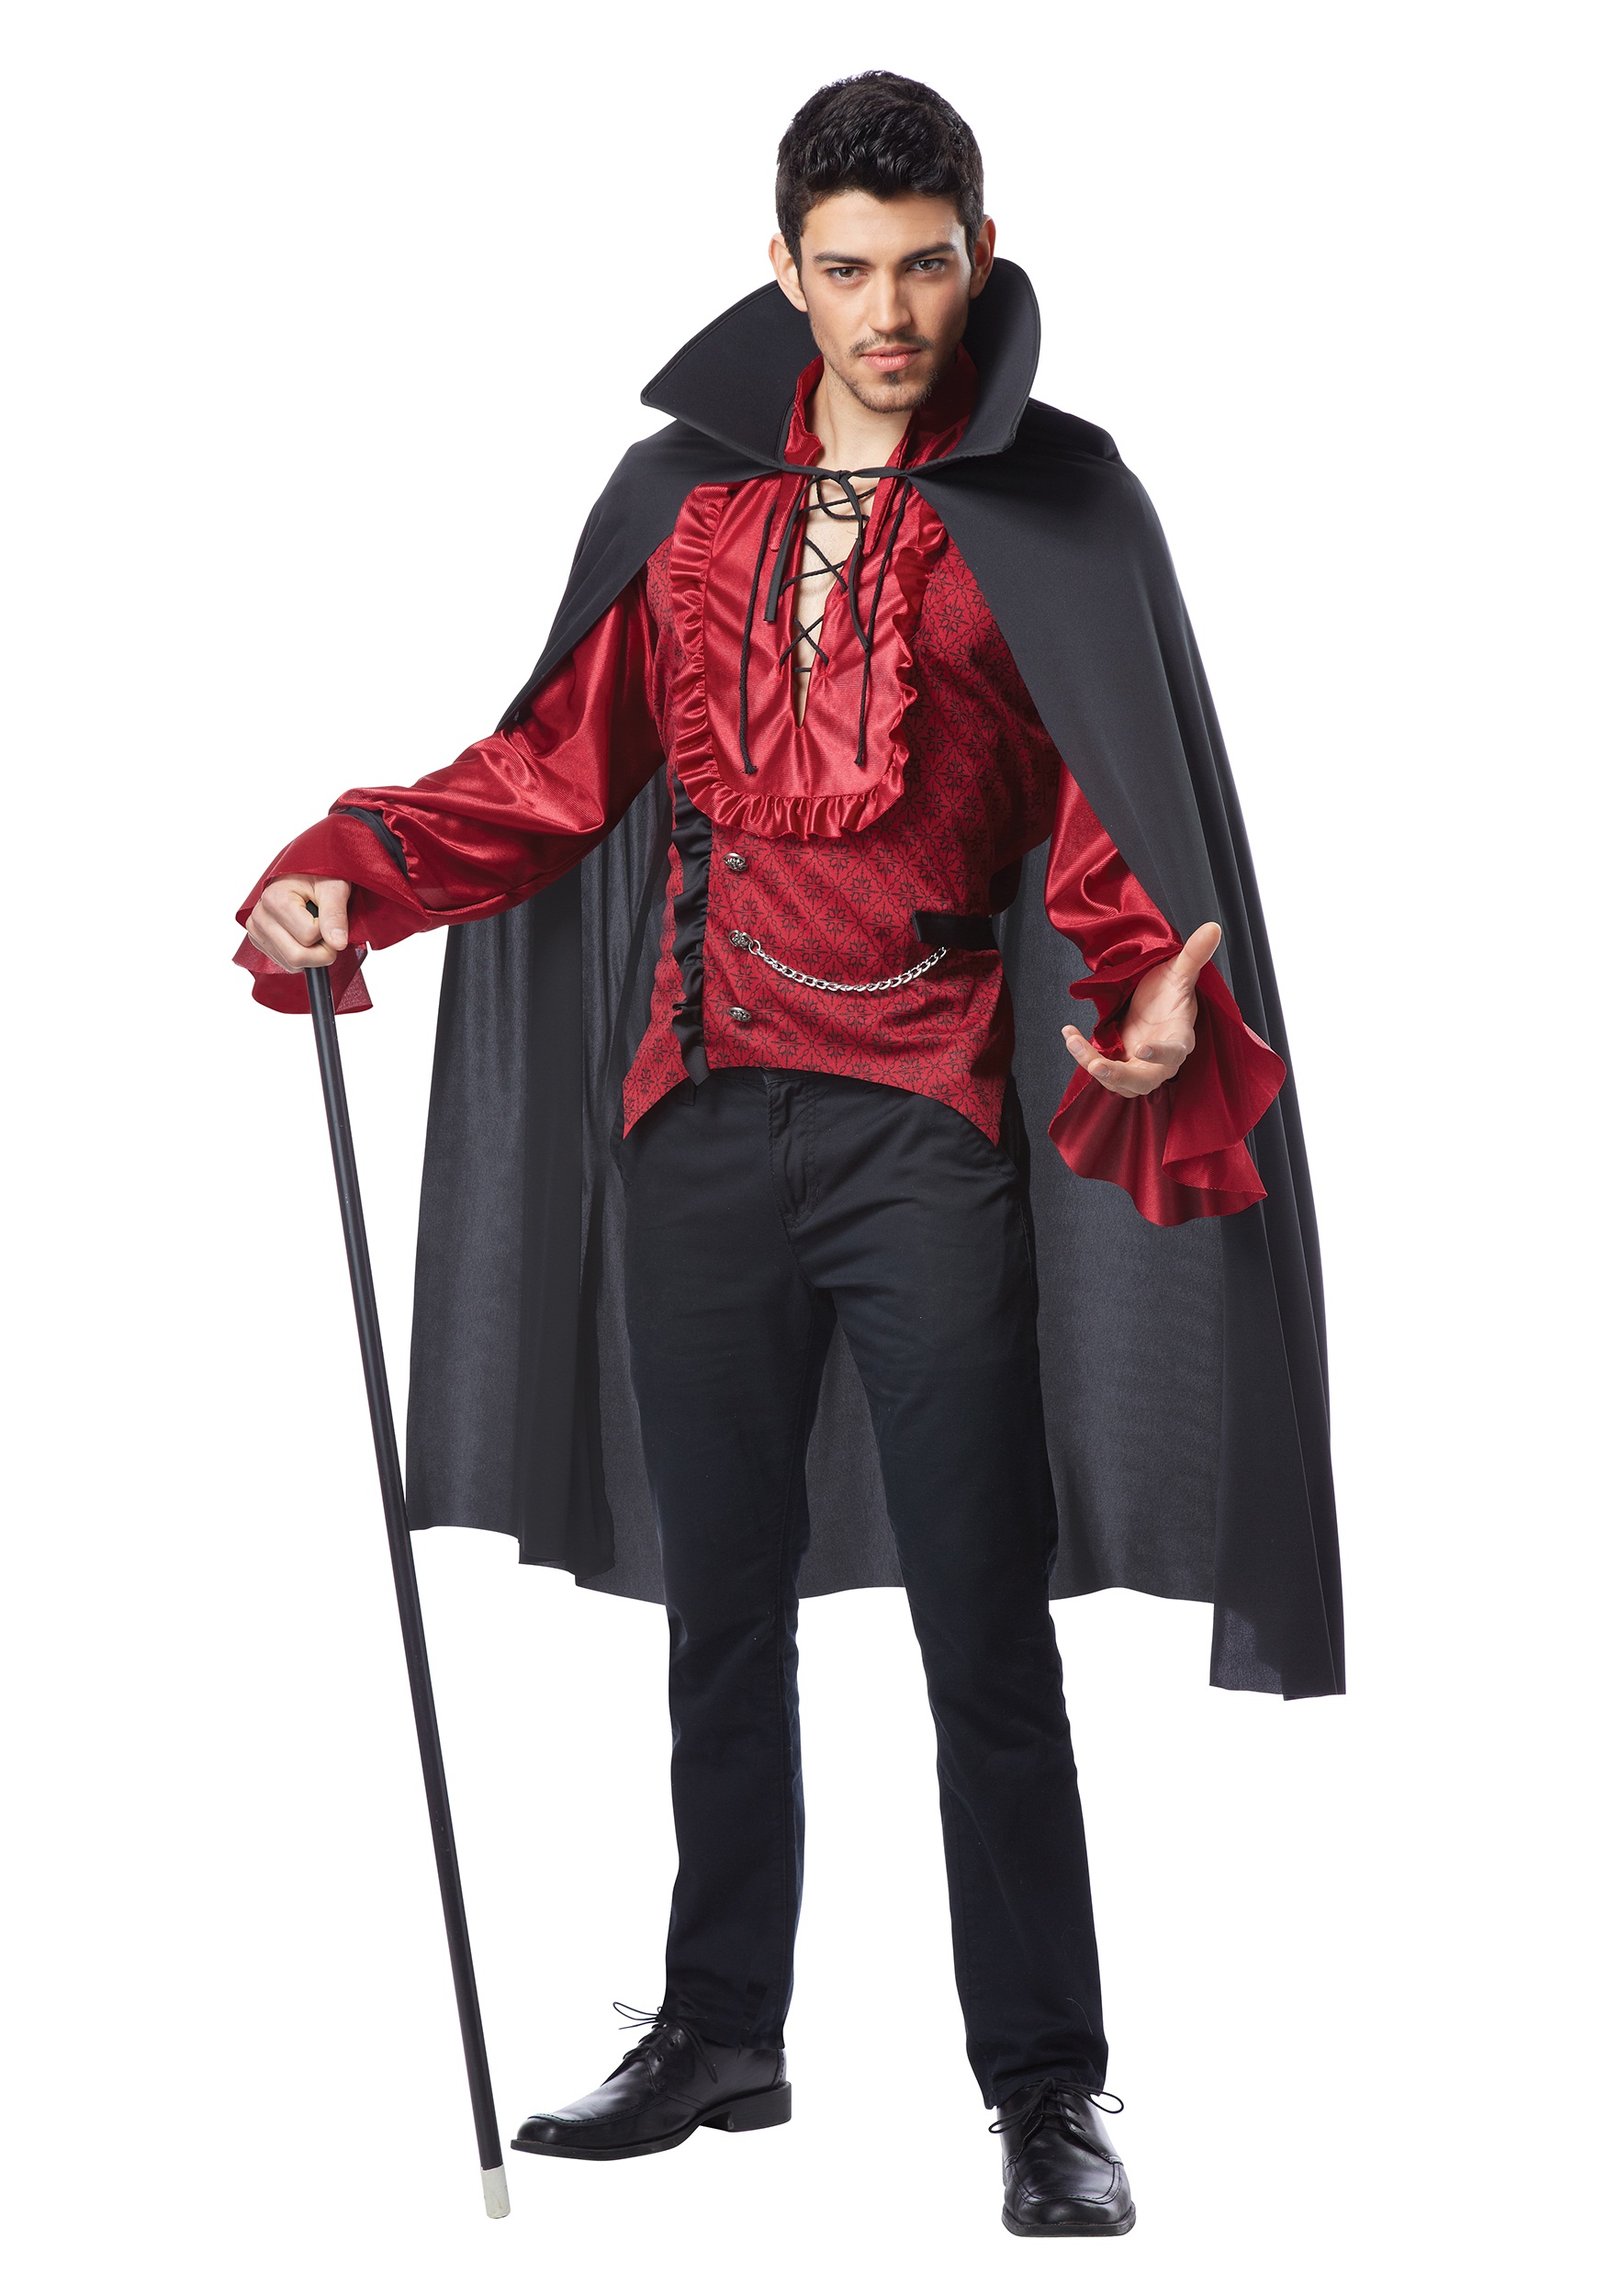 Dashing Vampire Costume - Halloween Costume Ideas 2022.